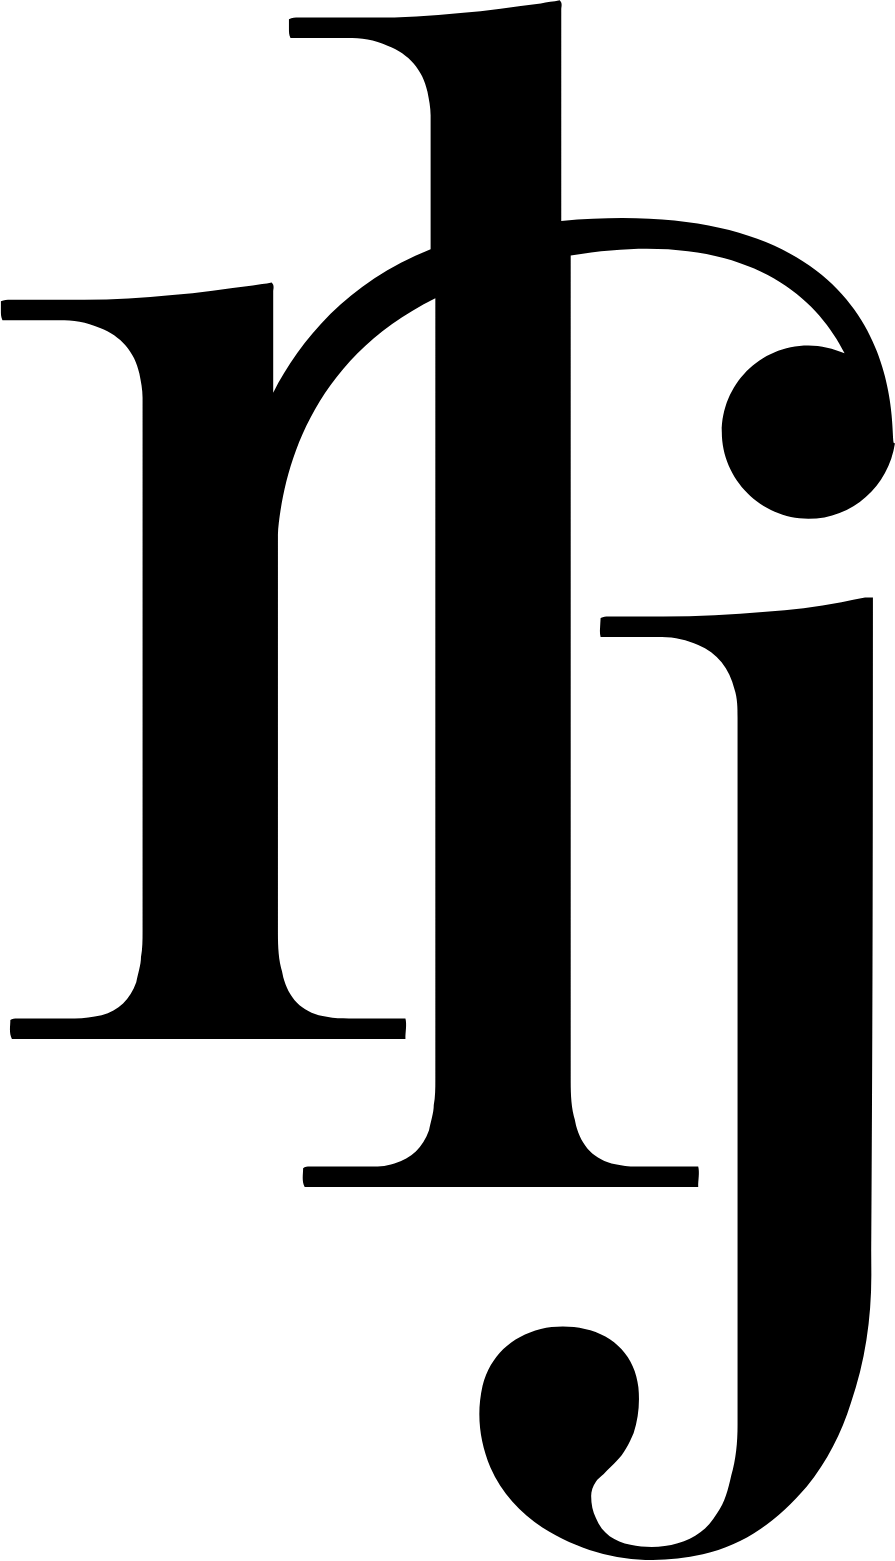 RLJ Lodging Trust logo (transparent PNG)